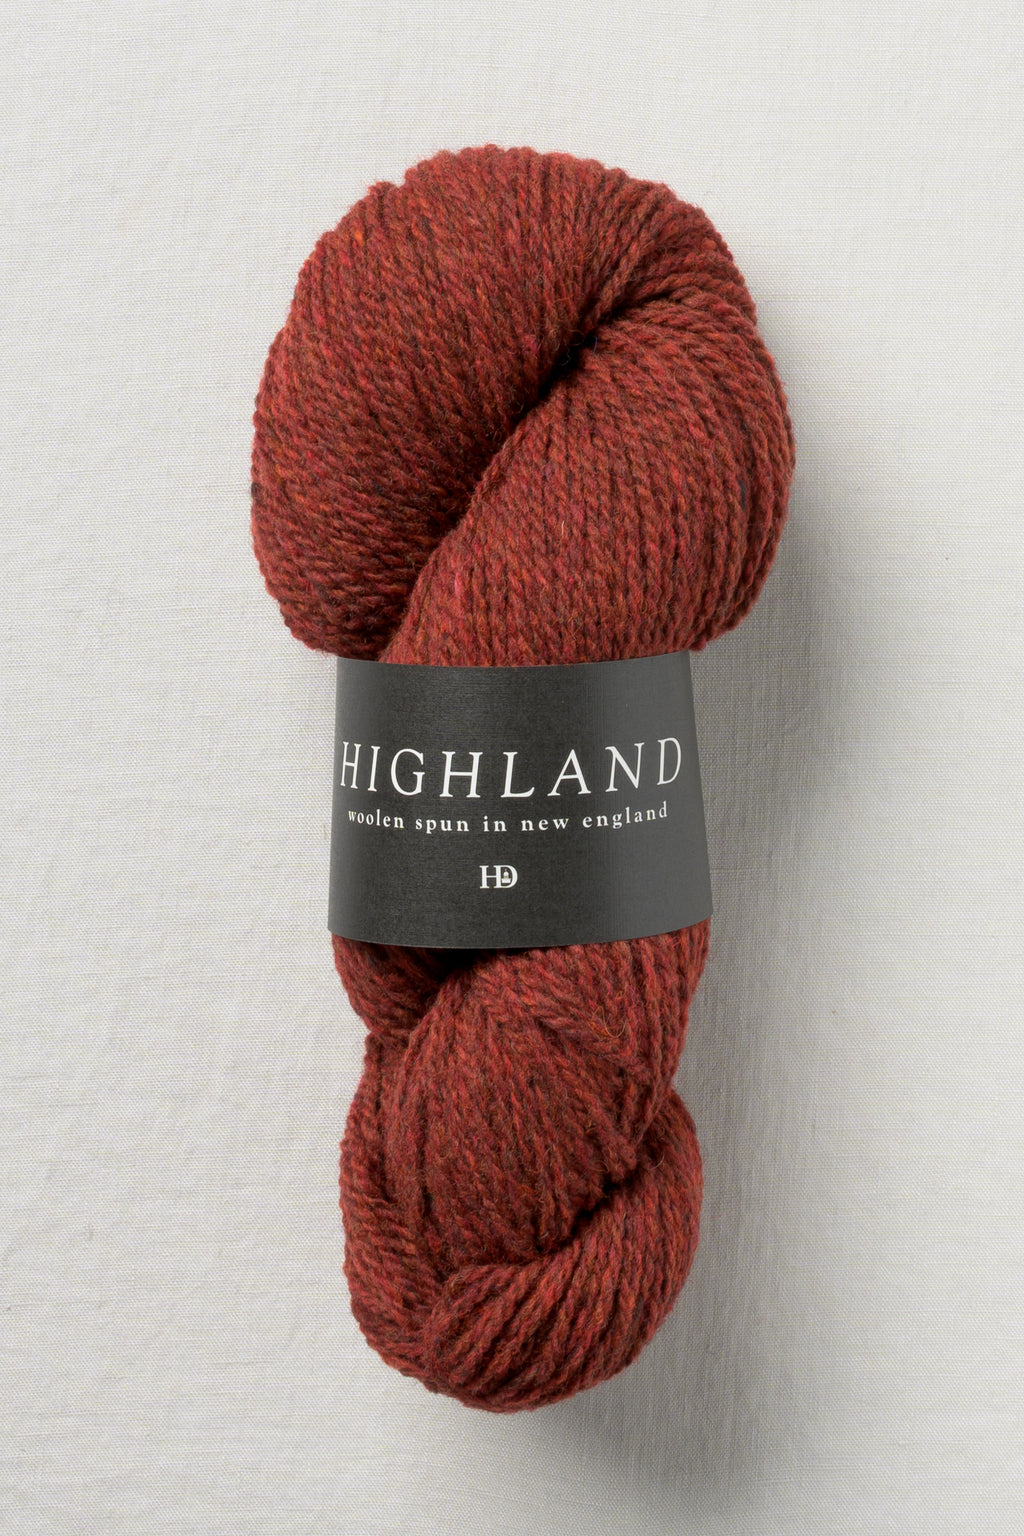 Harrisville Designs Highland yarn at The Endless Skein